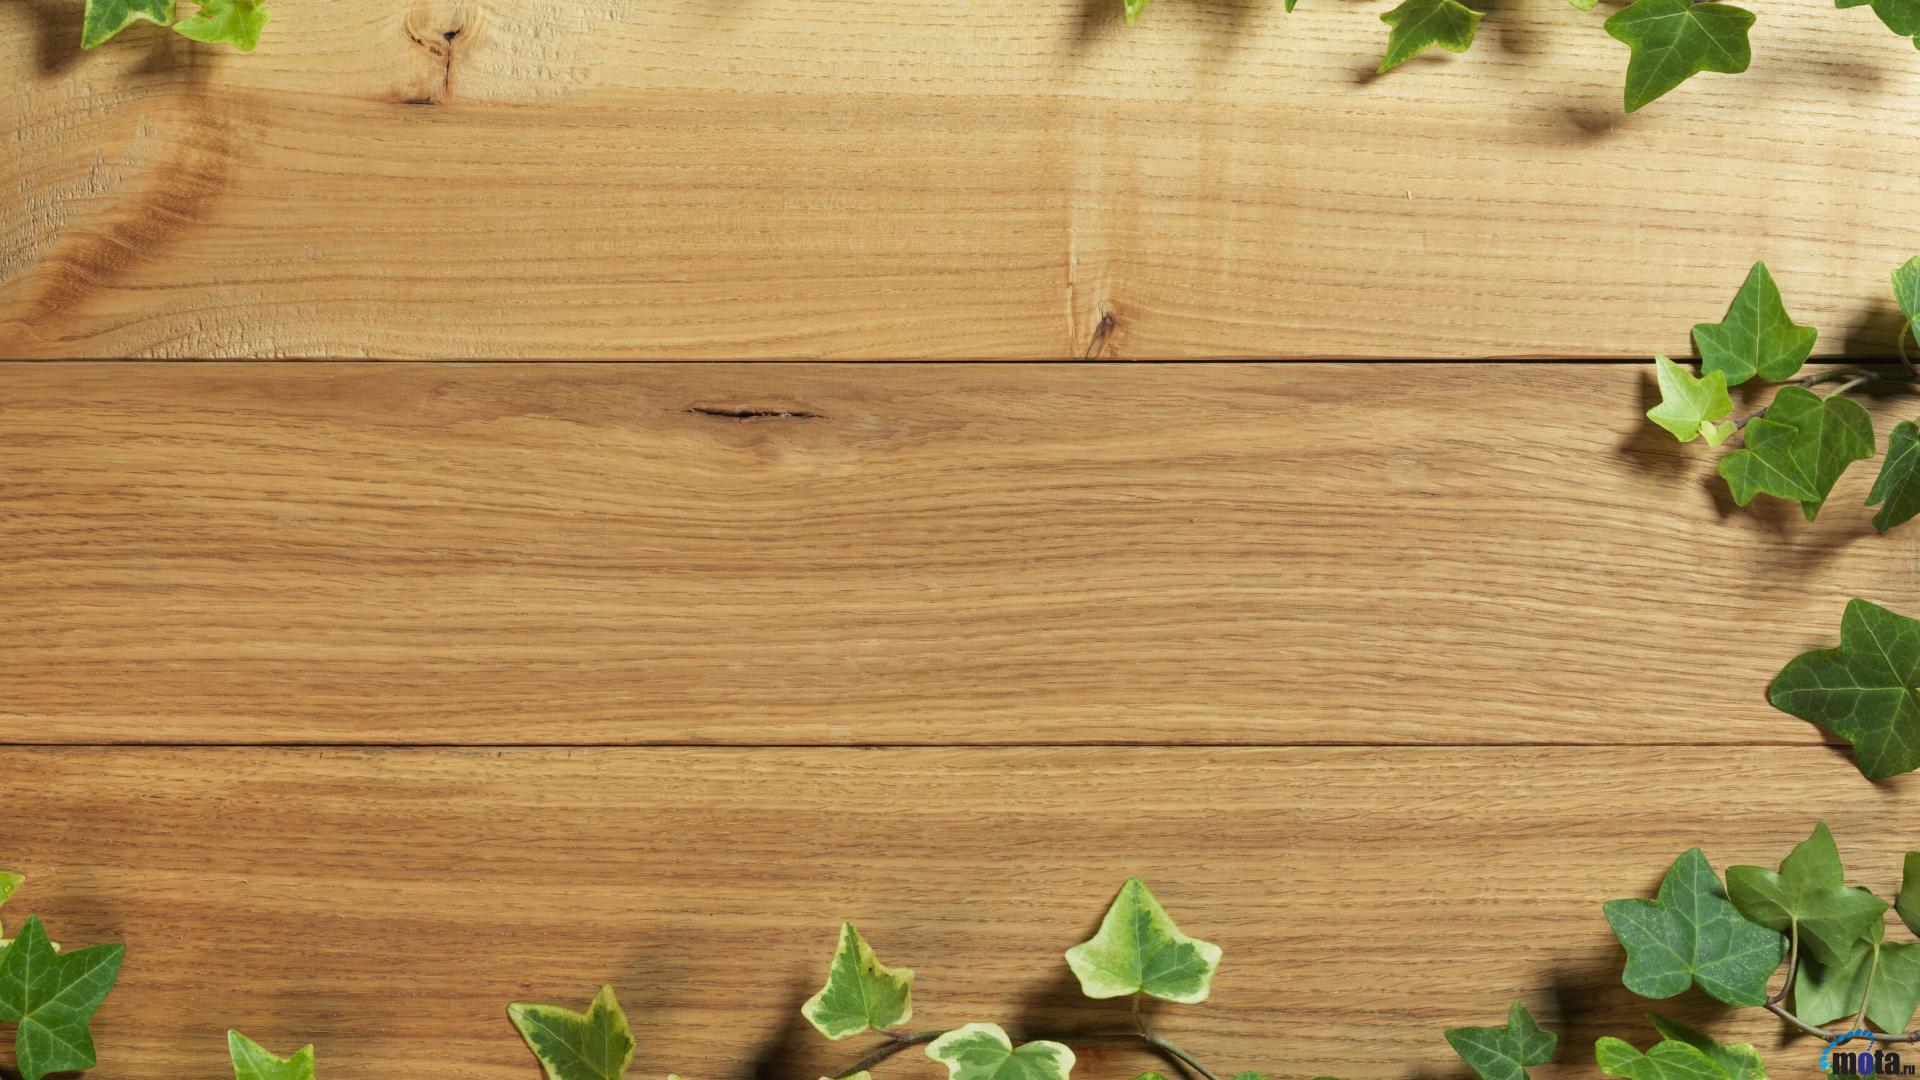 Texture gỗ là một trong những lựa chọn tuyệt vời để trang trí cho mọi không gian. Khi áp dụng texture gỗ, bạn sẽ tạo ra một không gian ấn tượng, phong cách và đầy tính thẩm mỹ. Hãy xem hình ảnh và khám phá tất cả các mẫu texture gỗ tuyệt đẹp.